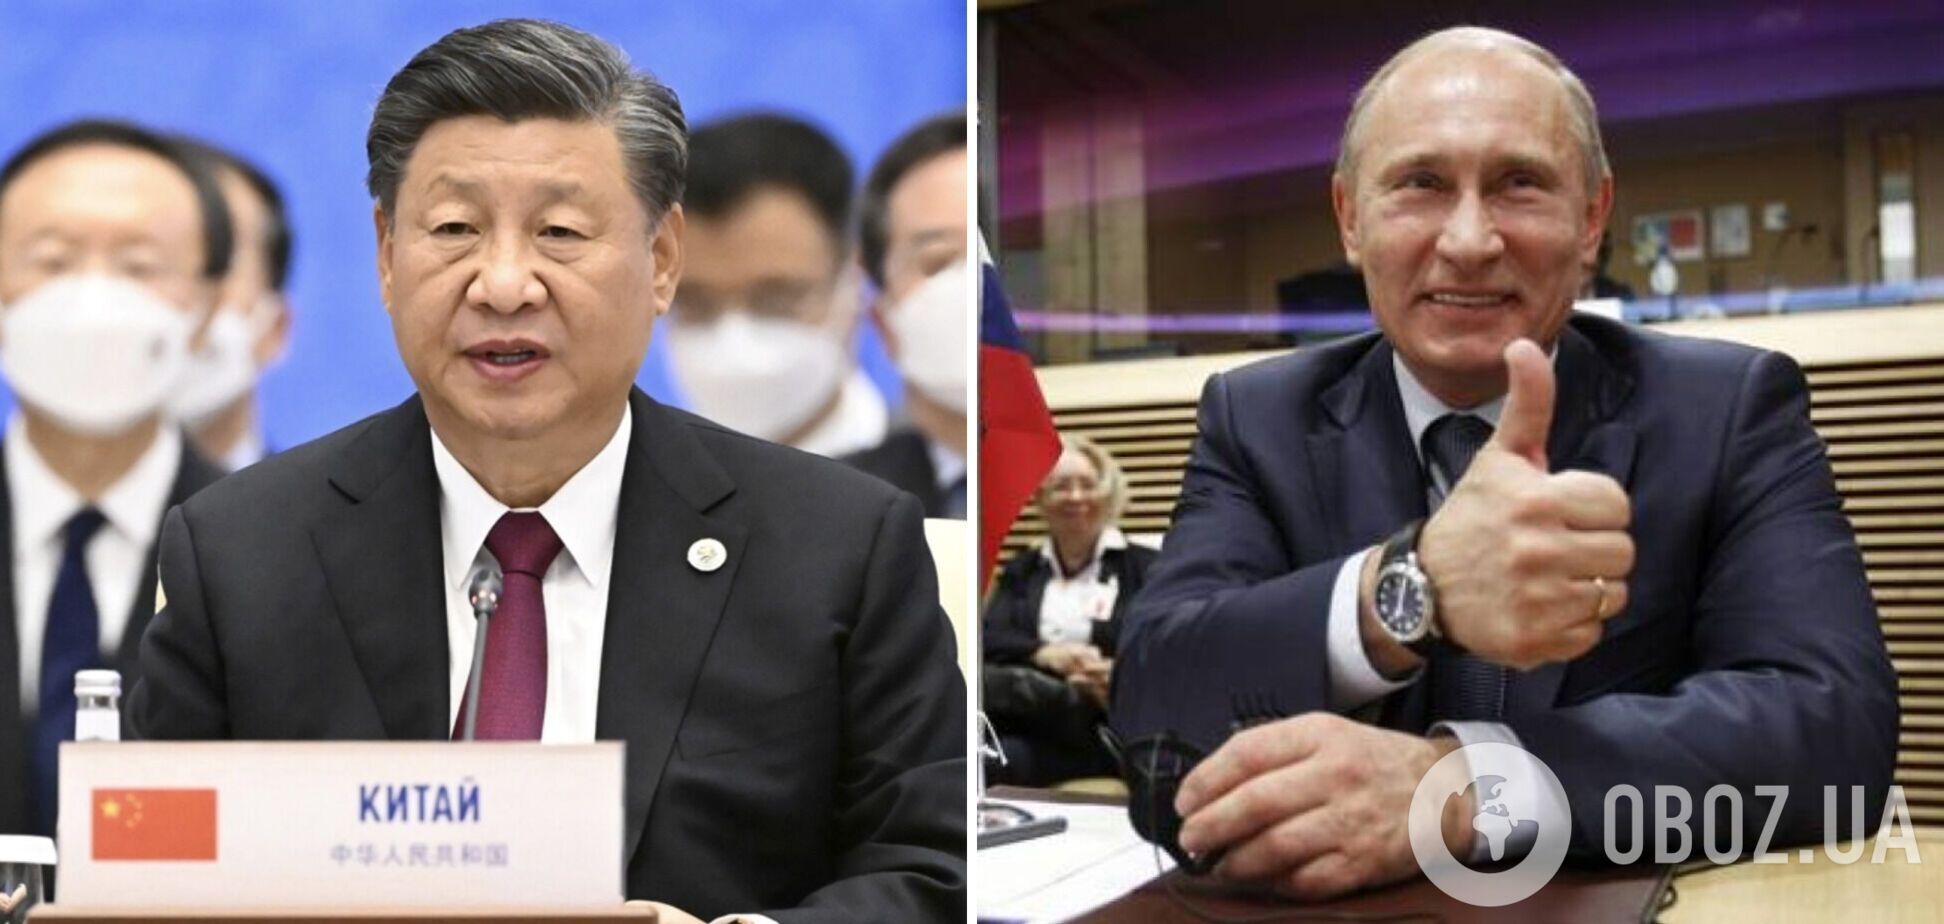 Си Цзиньпин призвал к мирным переговорам о прекращении войны в Украине, но не осудил вторжение РФ